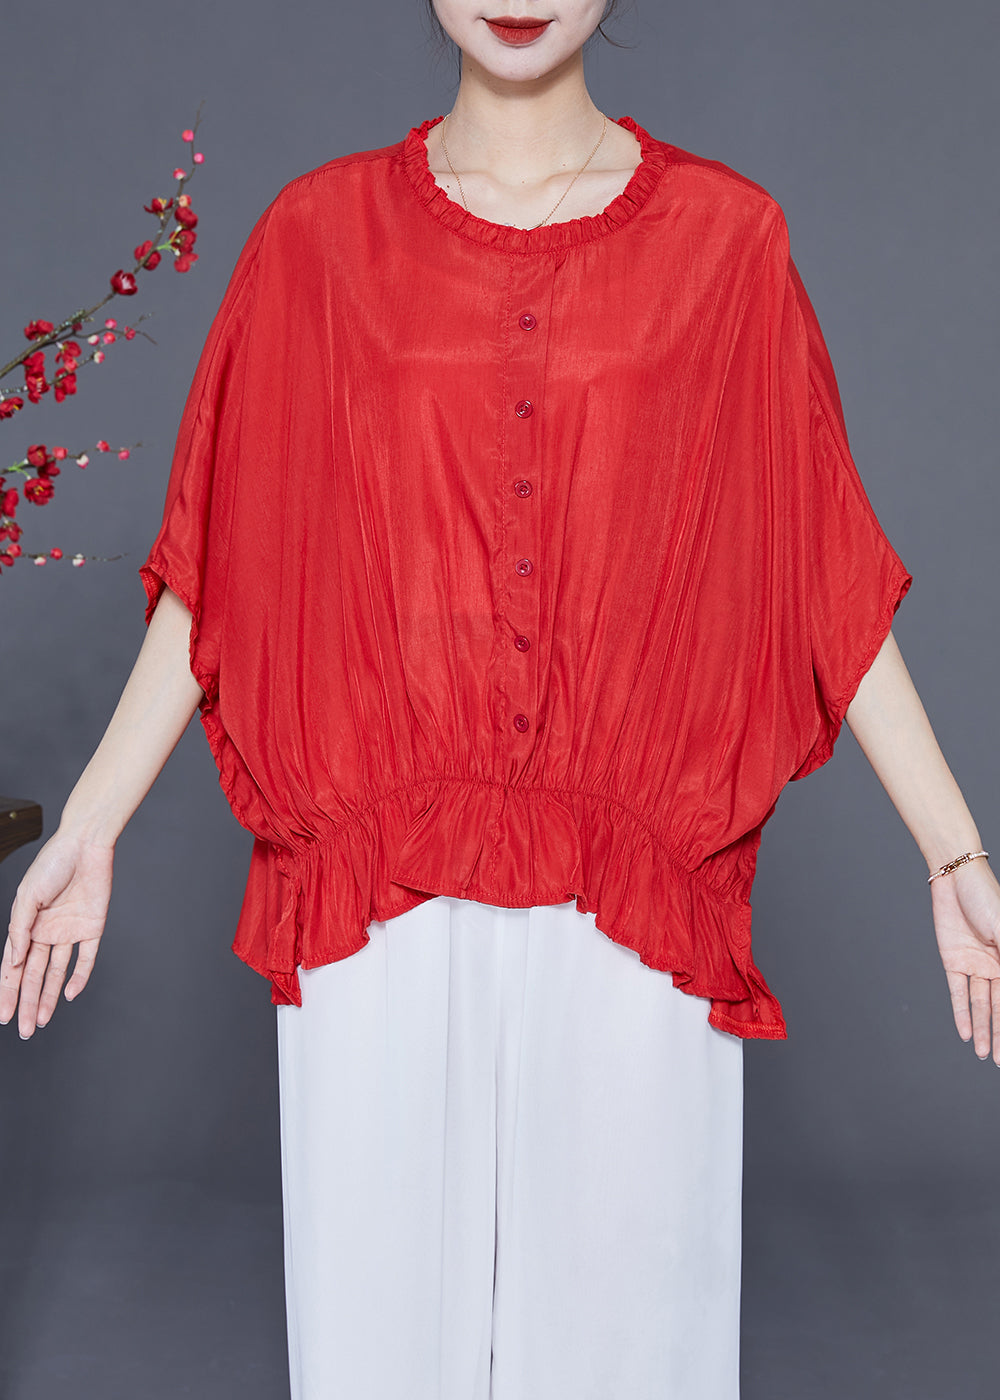 Plus Size Red O-Neck Oversized Wrinkled Silk Blouses Batwing Sleeve LY2322 - fabuloryshop